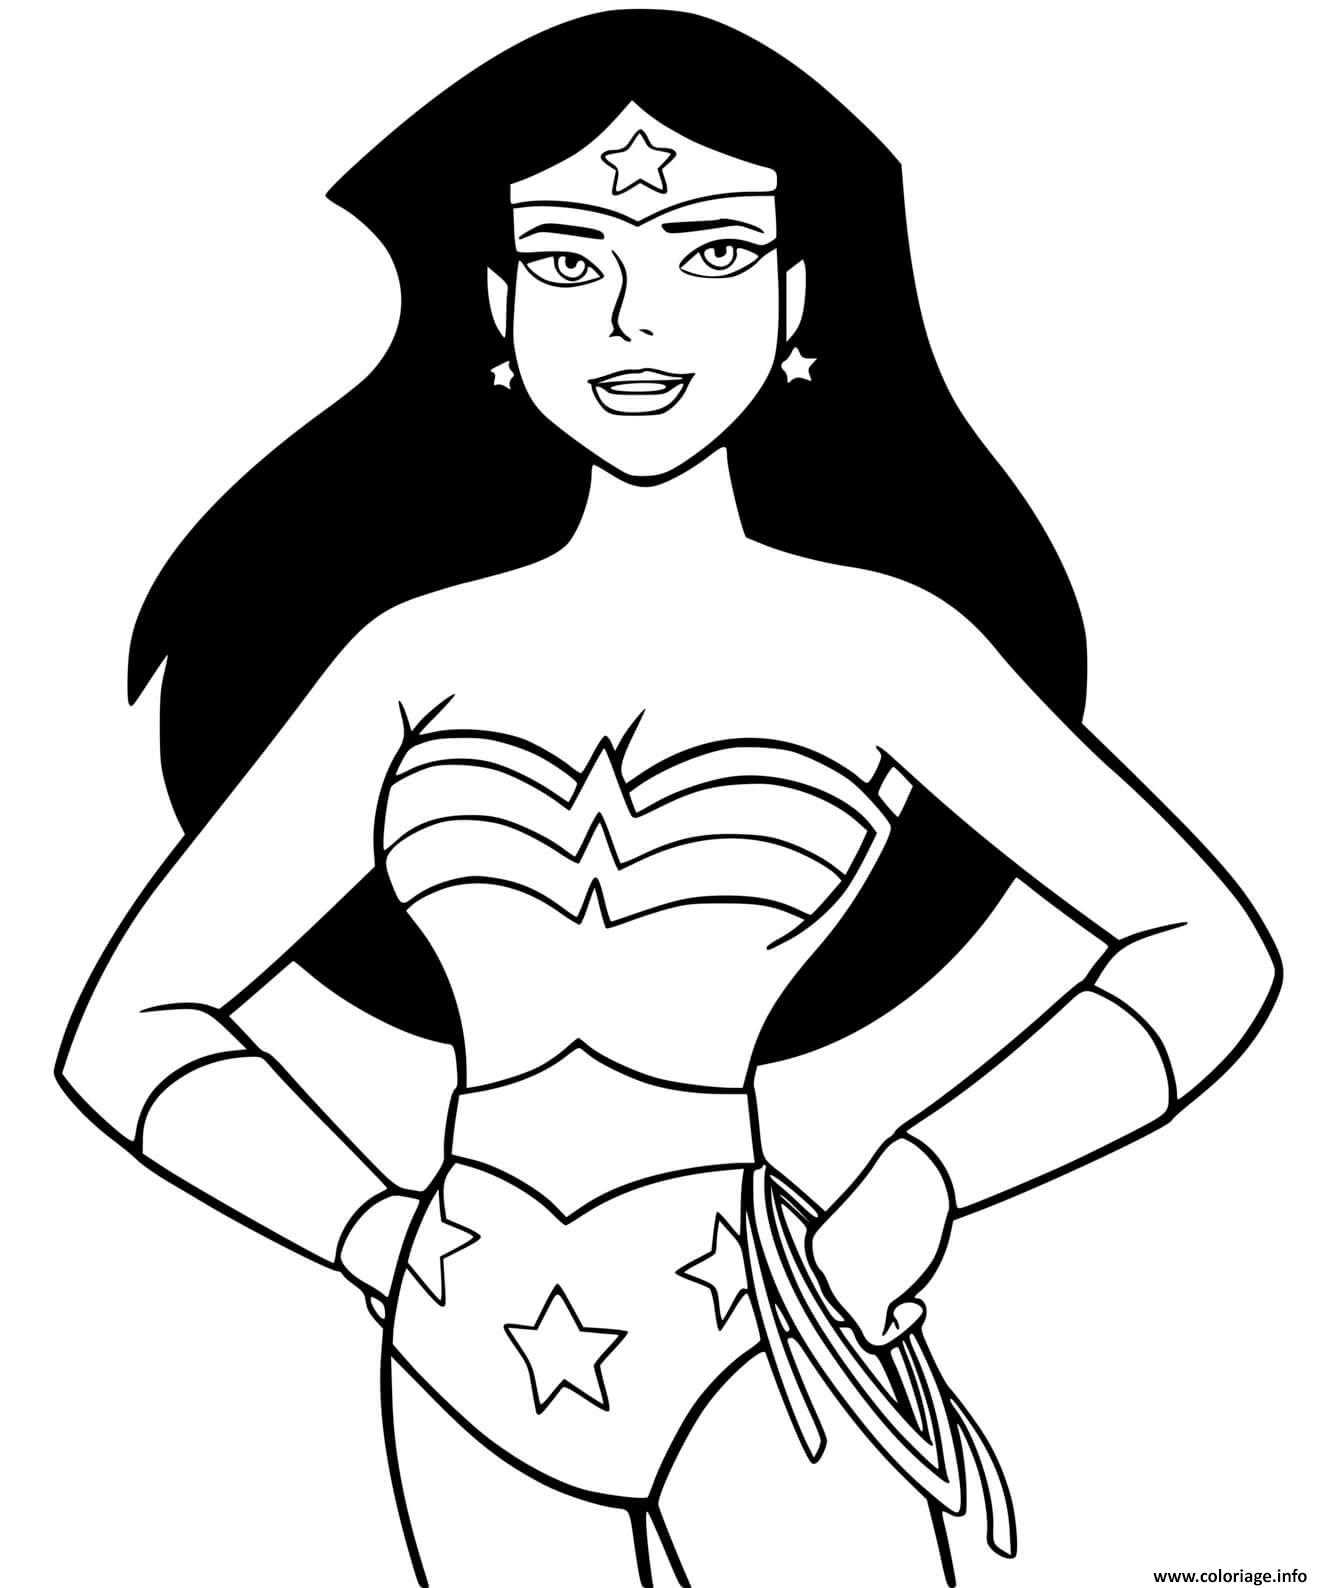 Dessin Super heroine wonder woman cartoon dessin anime enfant dc comics Coloriage Gratuit à Imprimer